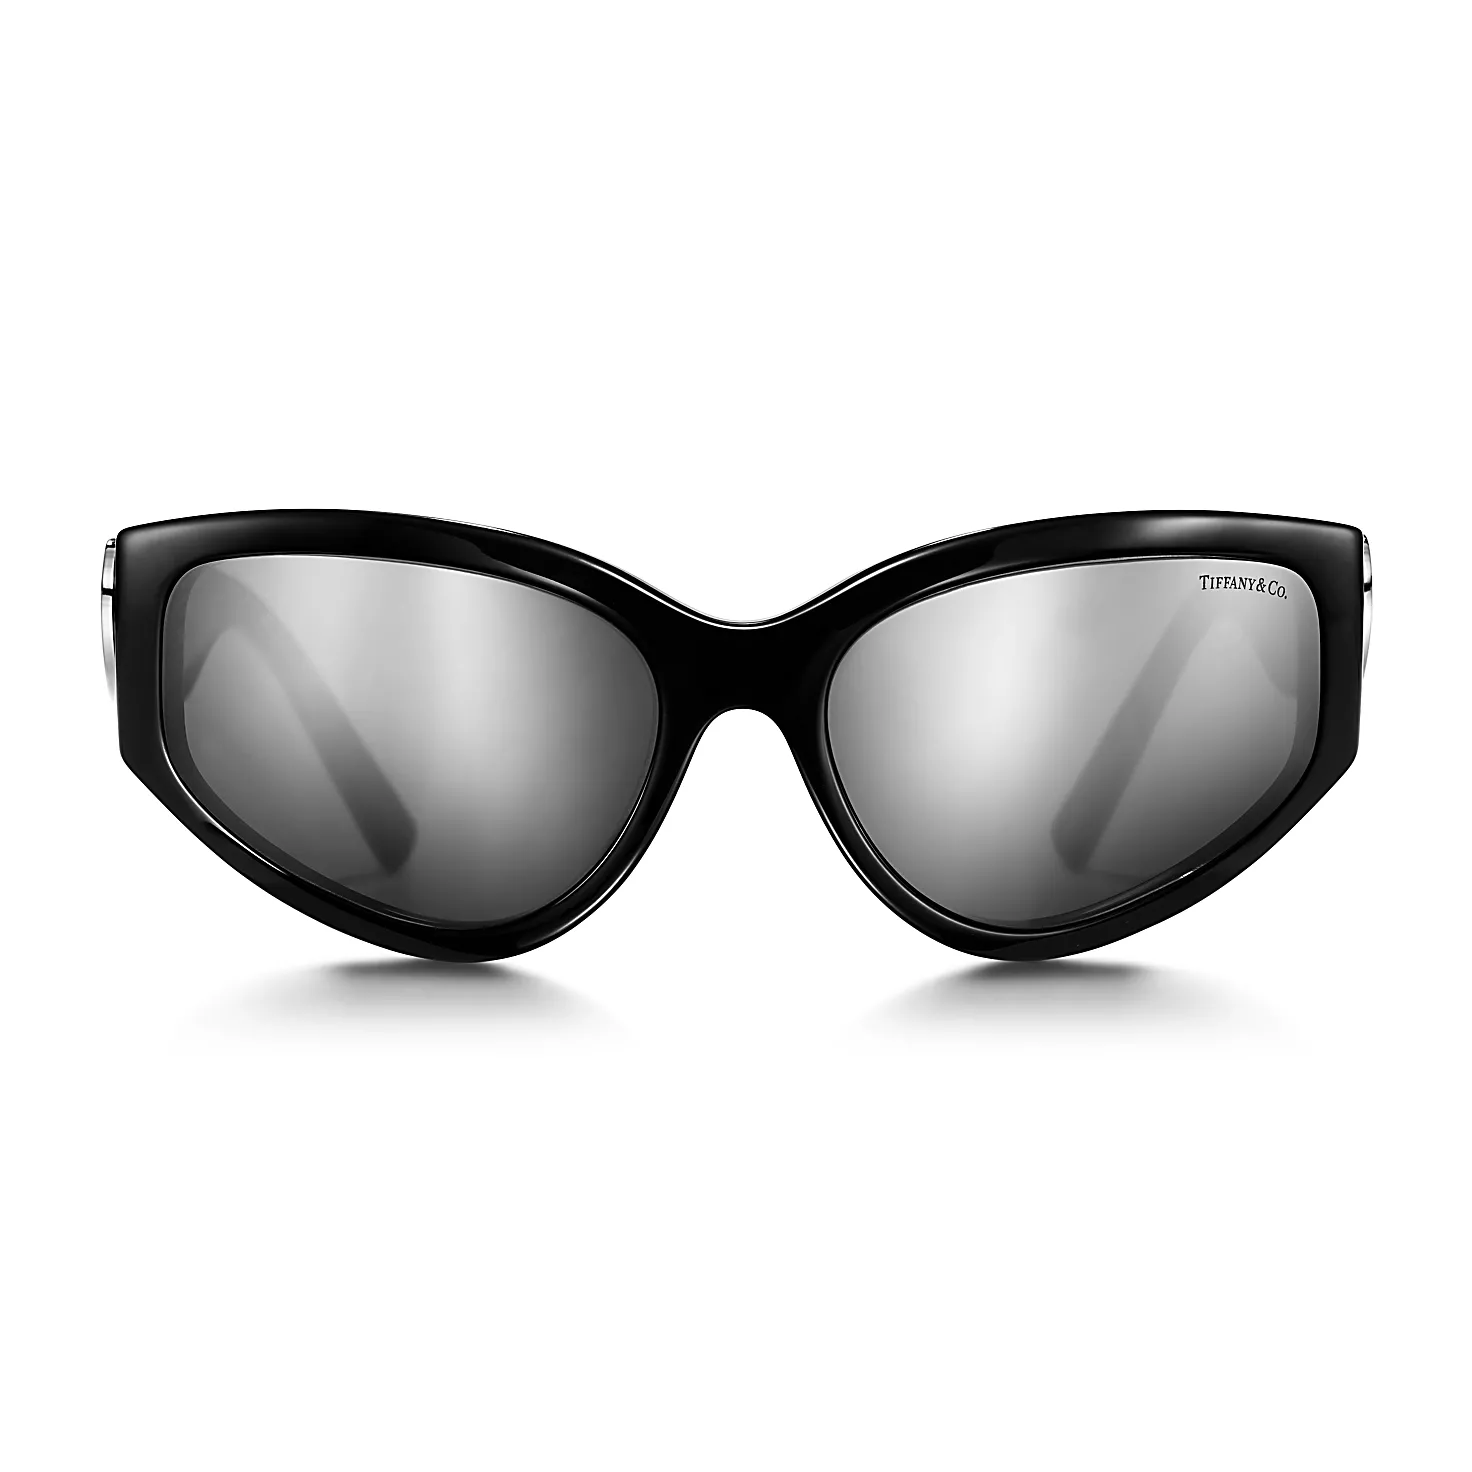 리턴 투 티파니:선글라스 블랙 아세테이트 소재, 그레이 미러 렌즈 세팅 이미지 번호 2